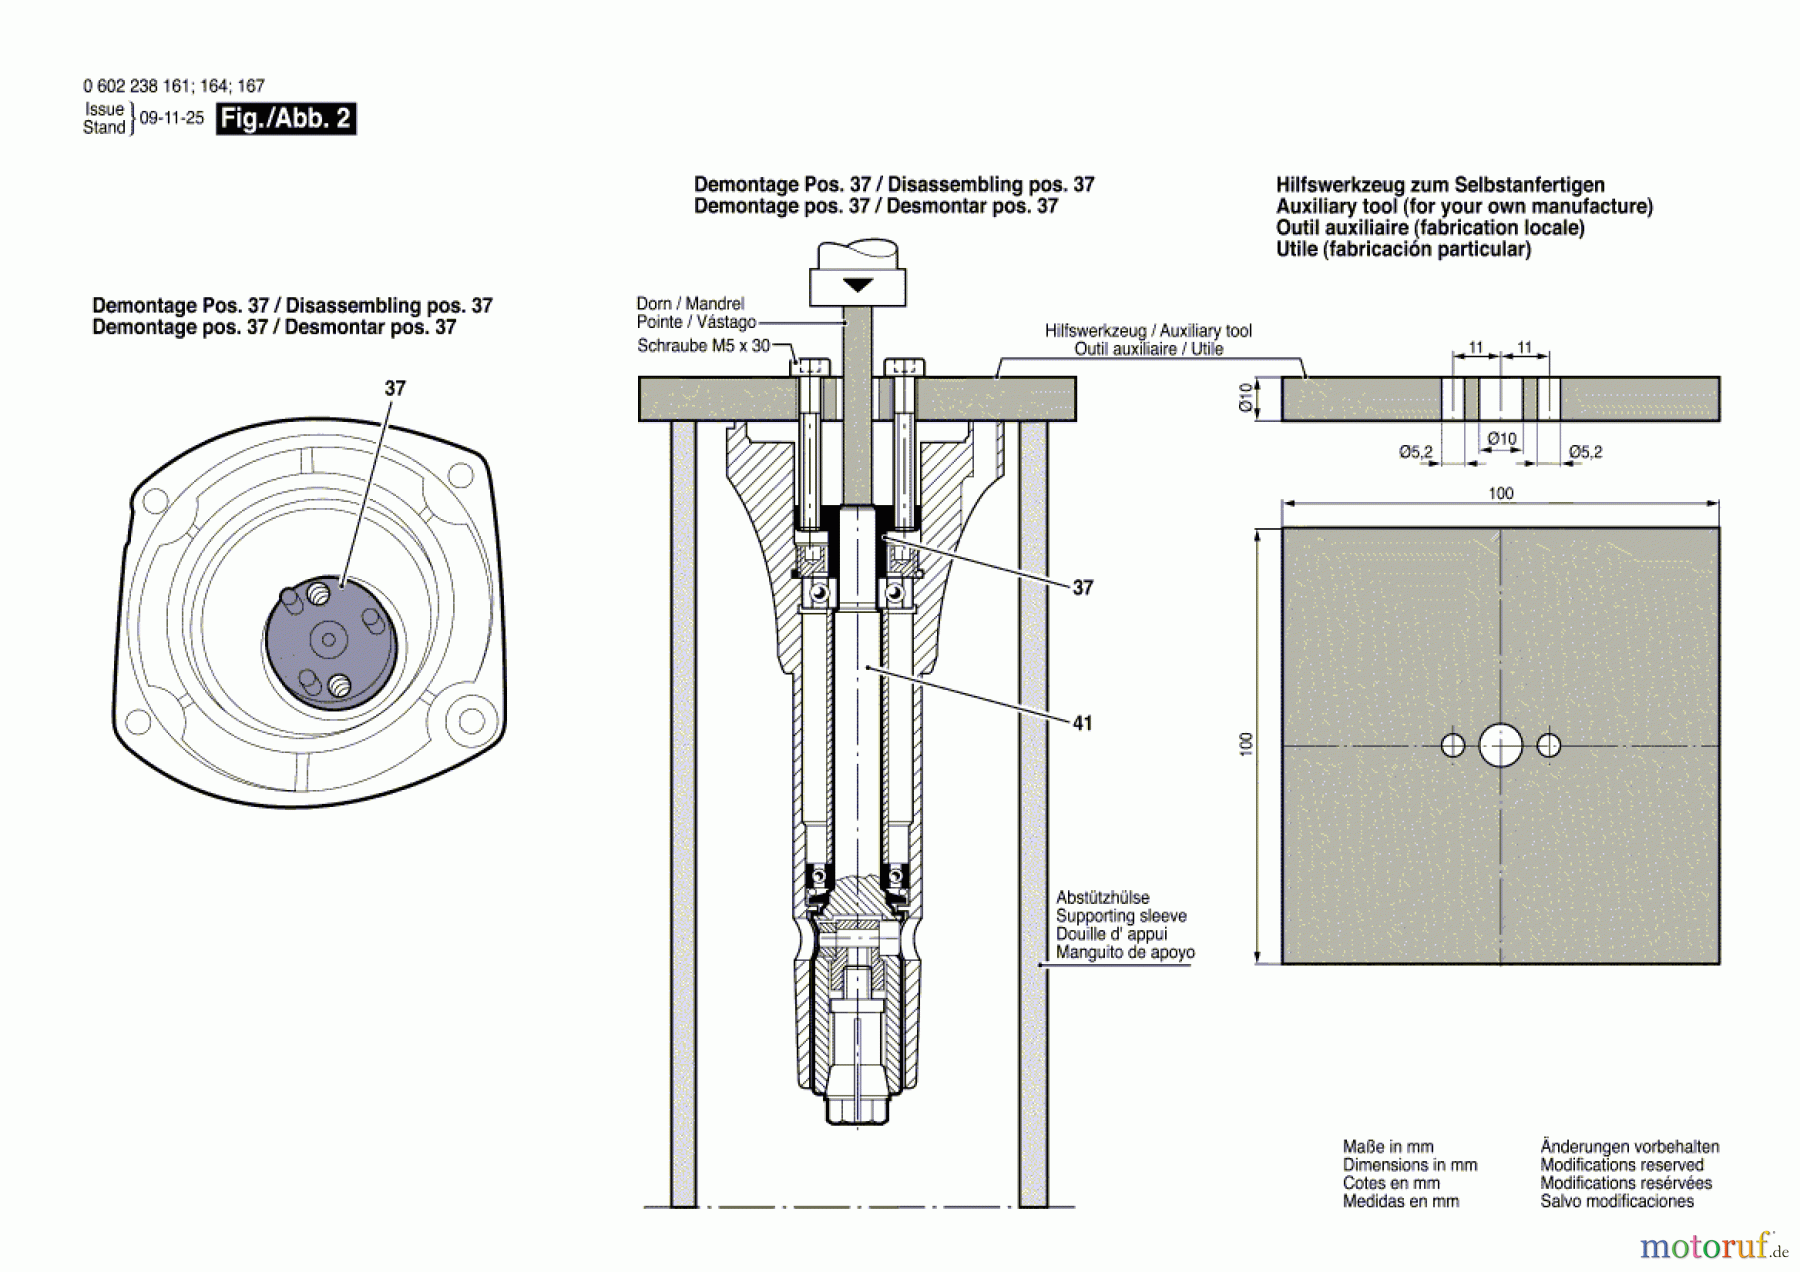  Bosch Werkzeug Hf-Geradschleifer ---- Seite 2